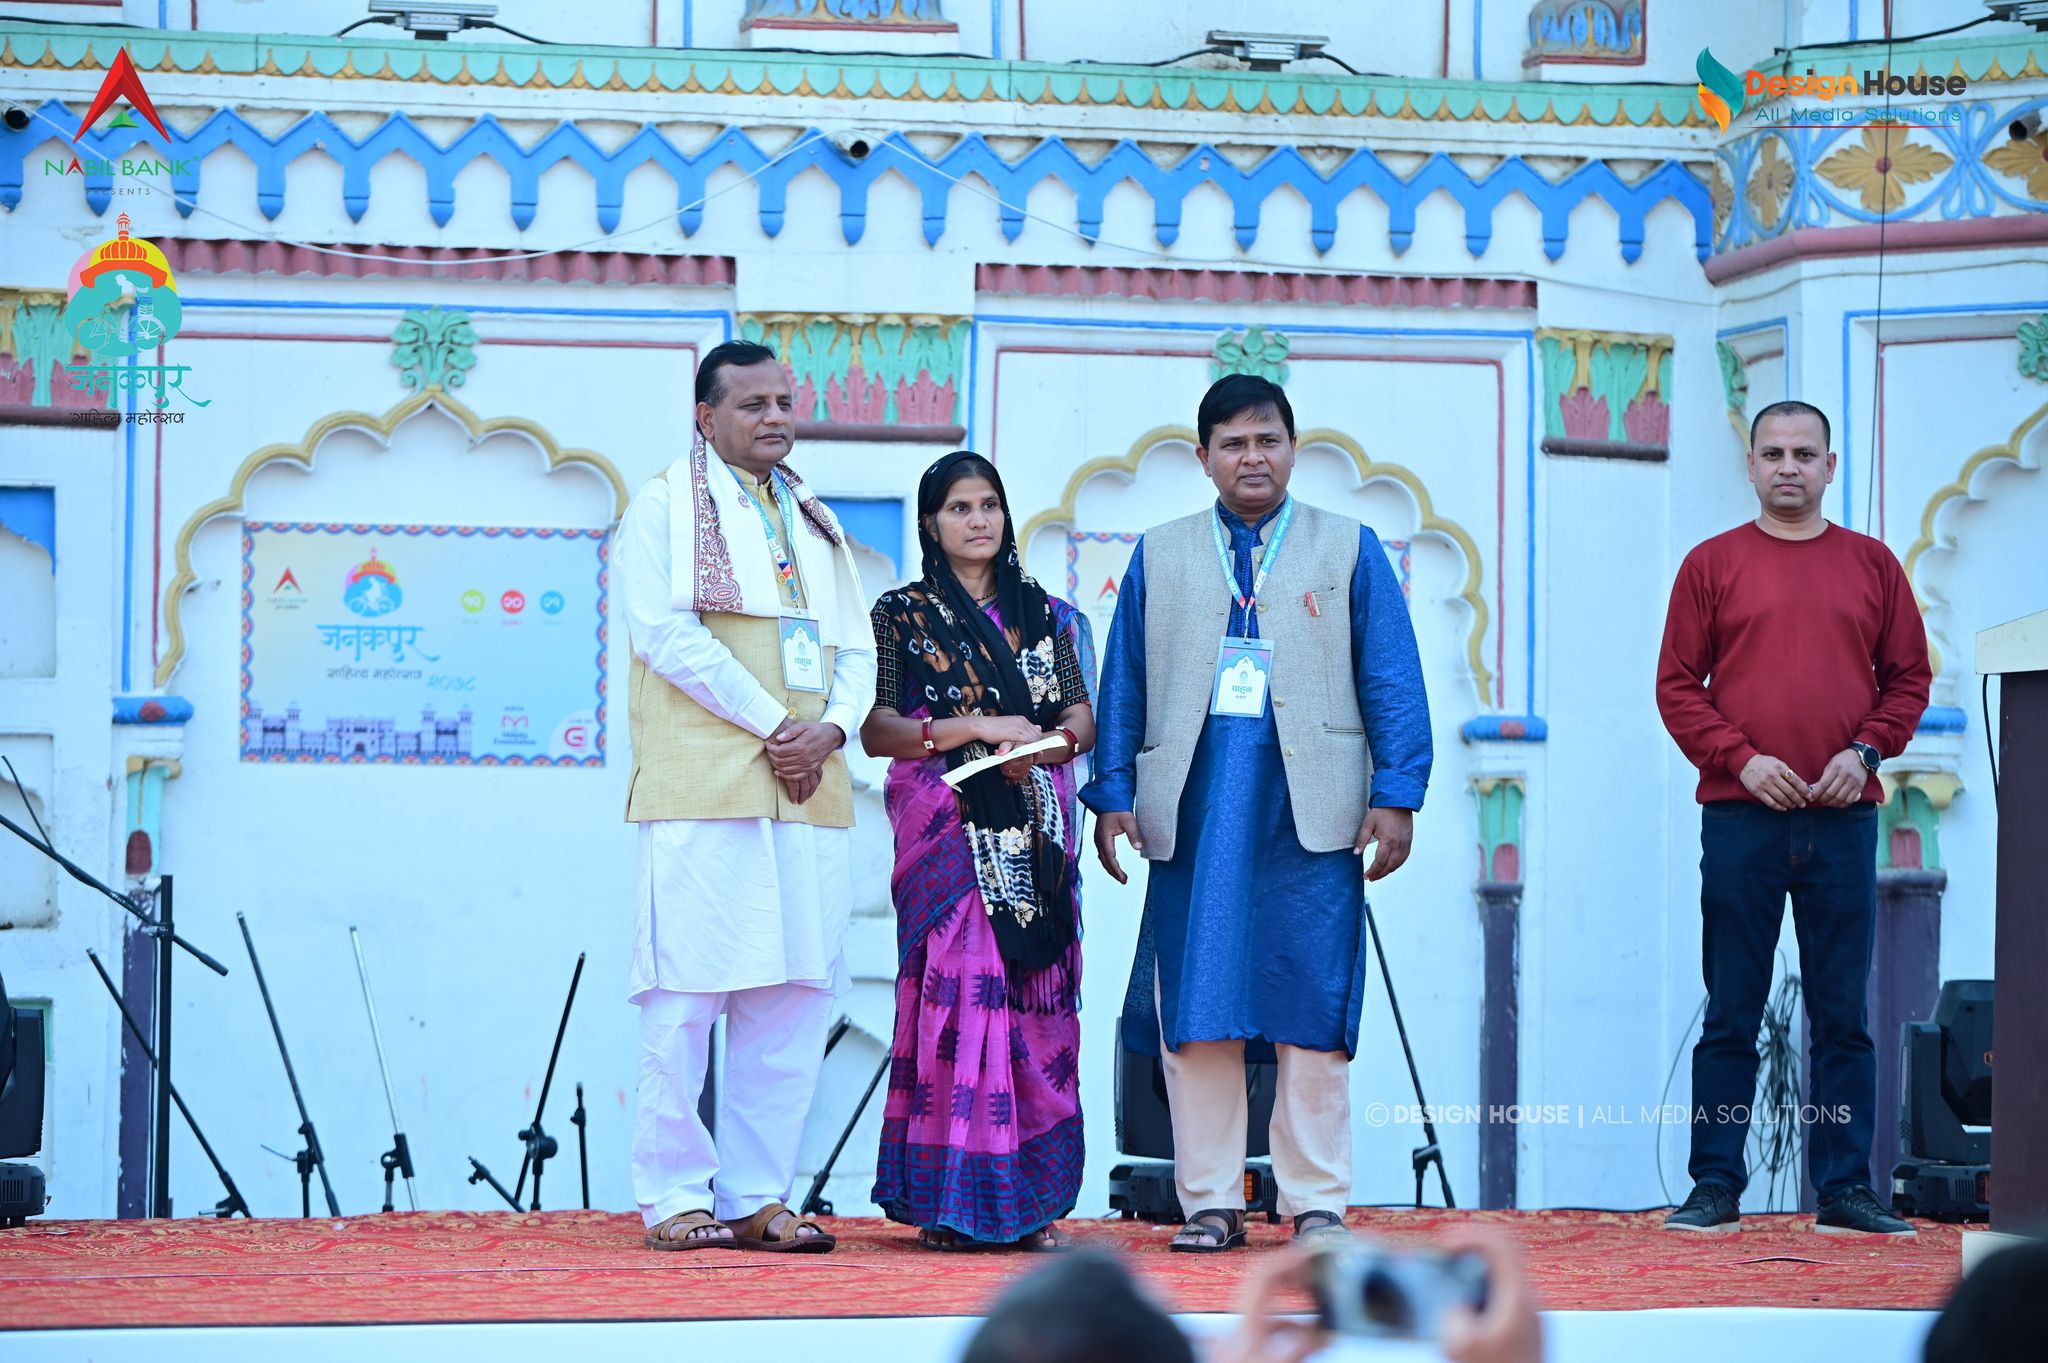 जनकपुर साहित्य महोत्सवमा आयोजकको आक्रोश : मुख्यमन्त्री र नगर प्रमुख मिठो मात्रै बोल्छन्, सहयोग गर्दैनन्